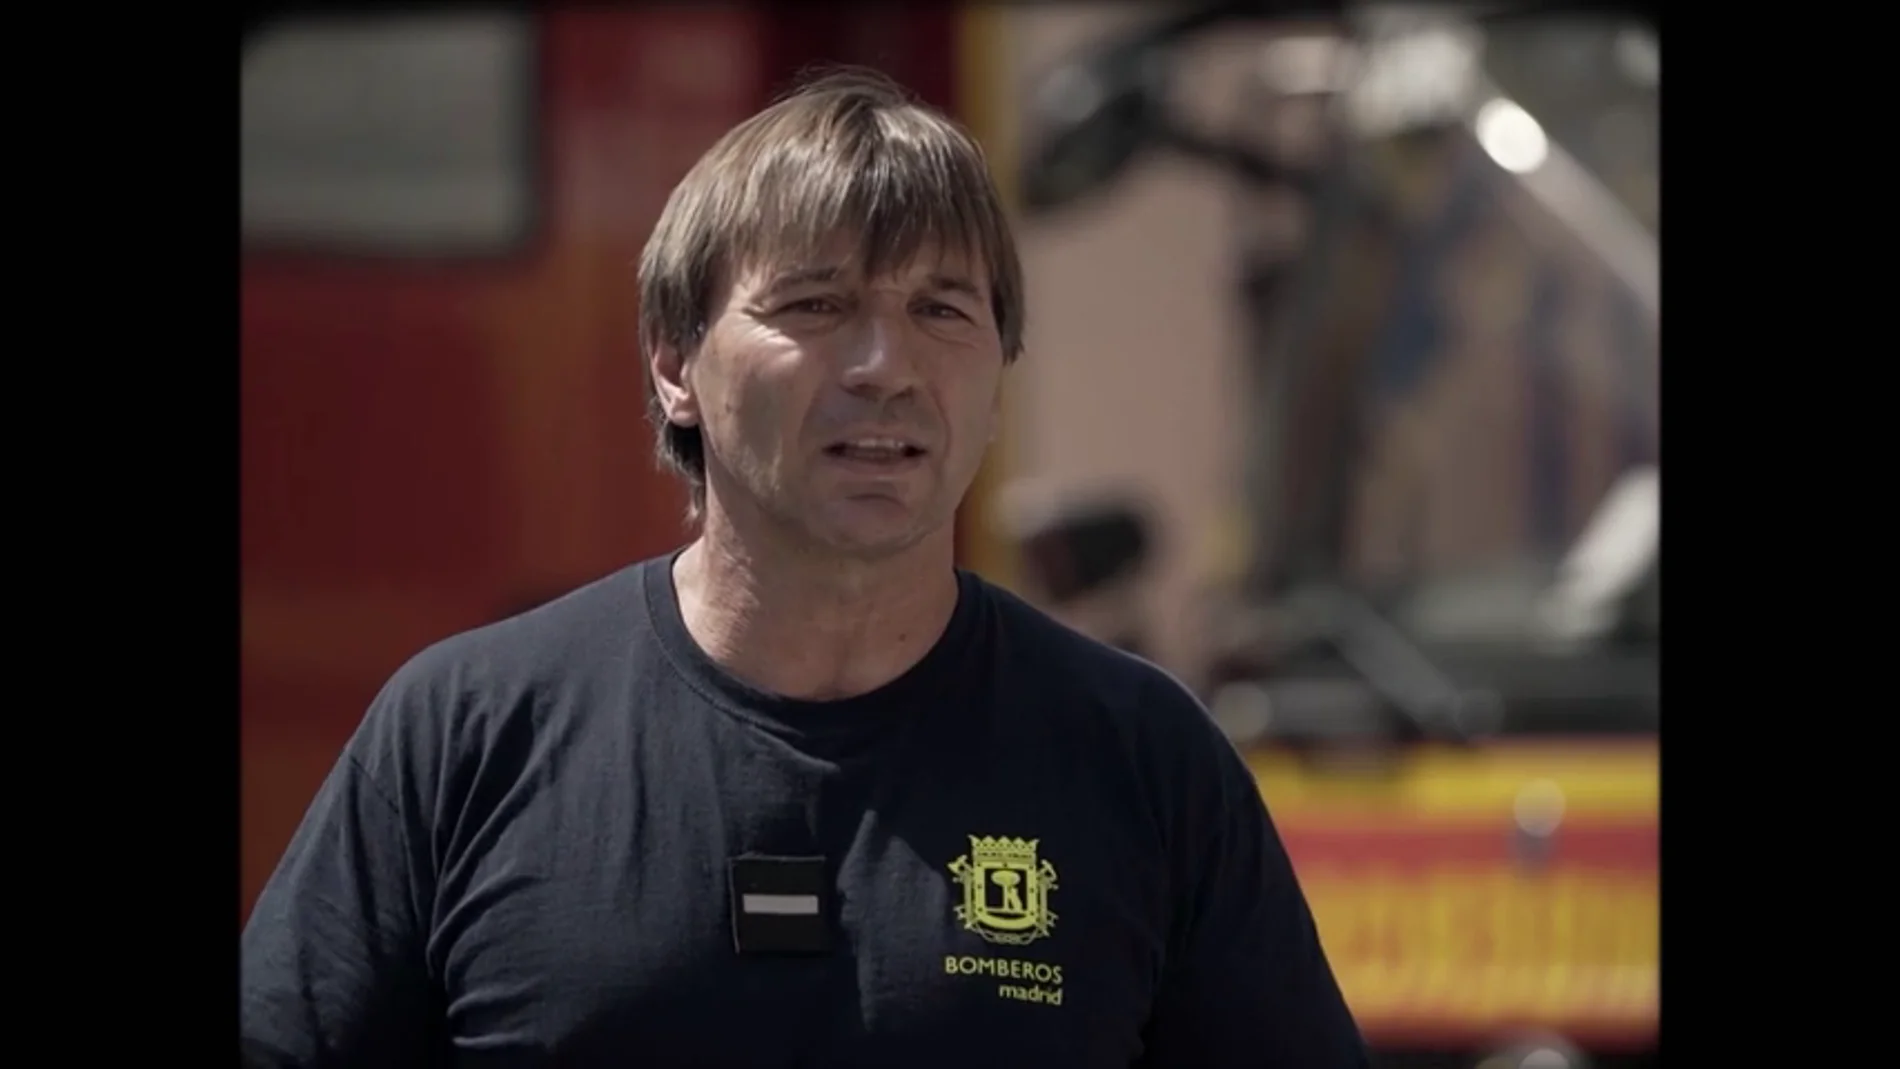 Hablamos con un bombero que casi muere en el incendio del Windsor: "Pensé en mi mujer y mis hijos"